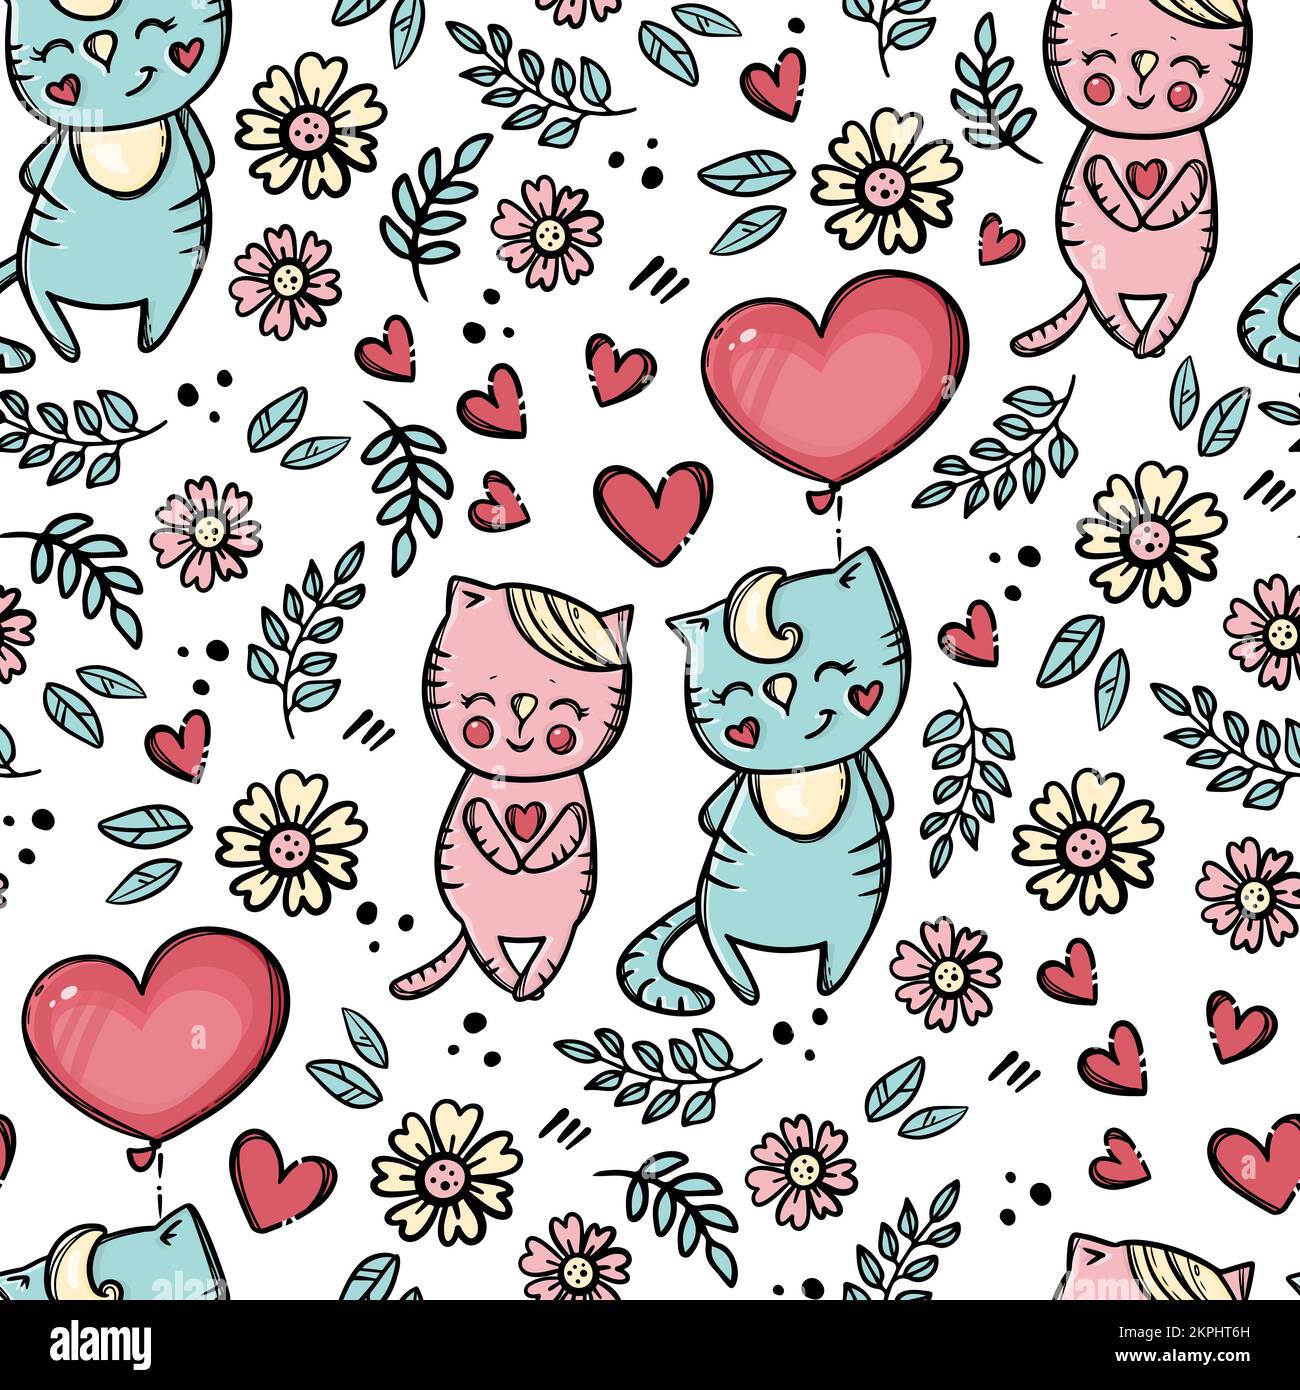 SAN VALENTINO MONGOLFIERA carino enamored Kitten con palloncino offre il suo cuore a Sweetheart Cartoon animali disegnati a mano senza cuciture modello Vector Illustration Illustrazione Vettoriale